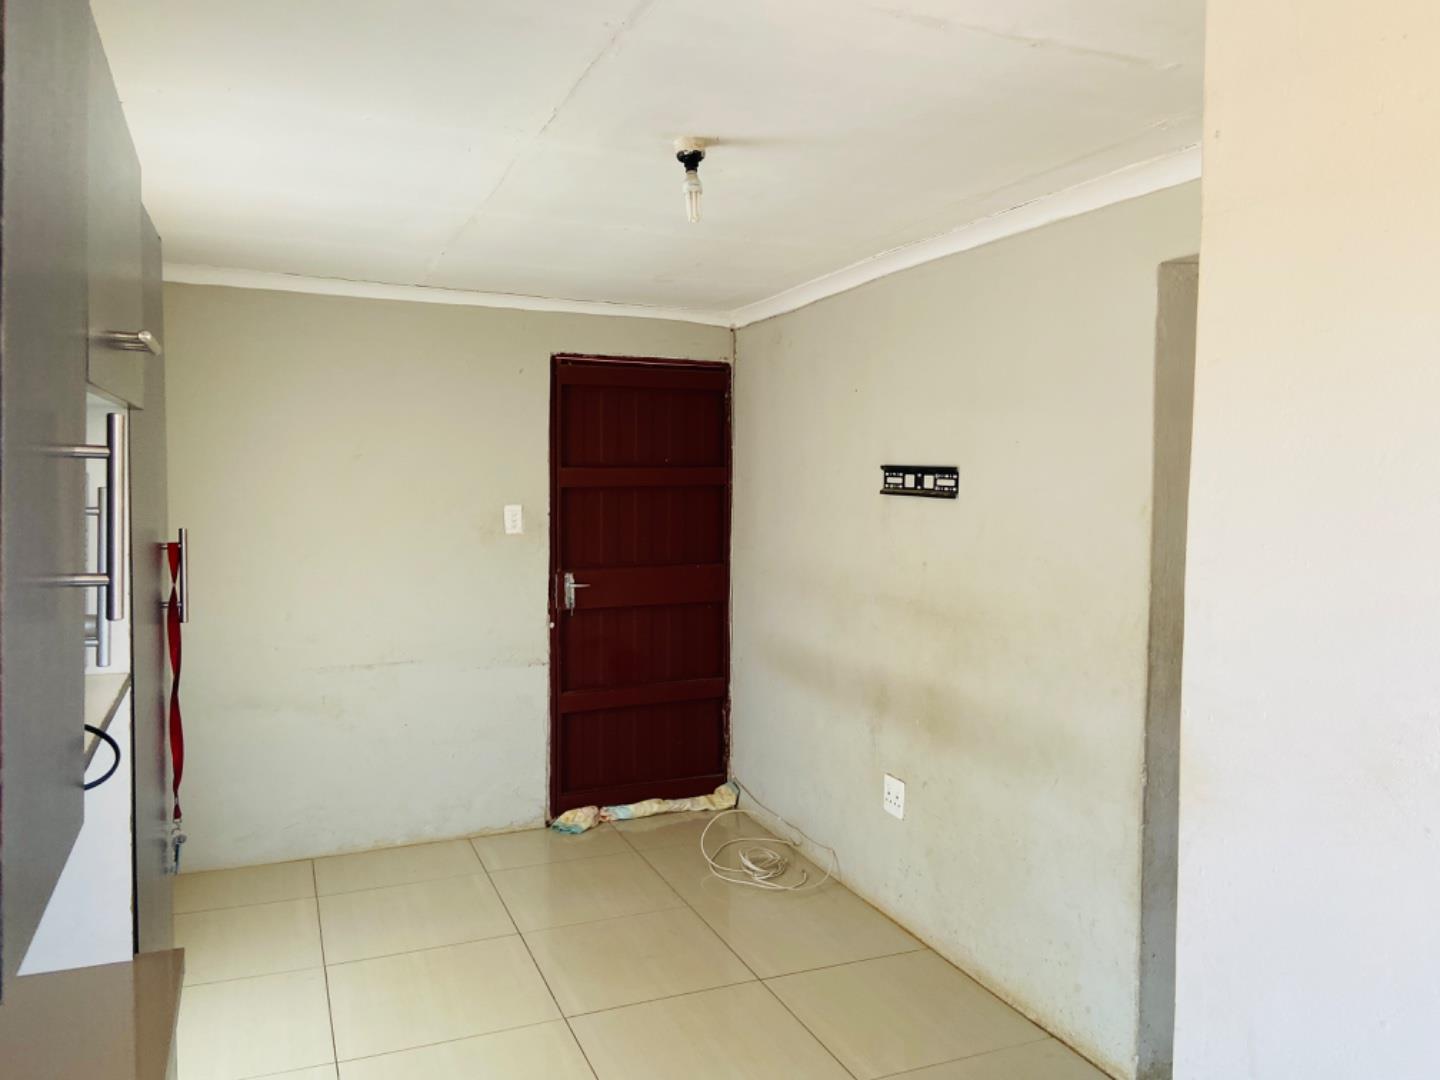 2 Bedroom Property for Sale in Soshanguve S Gauteng